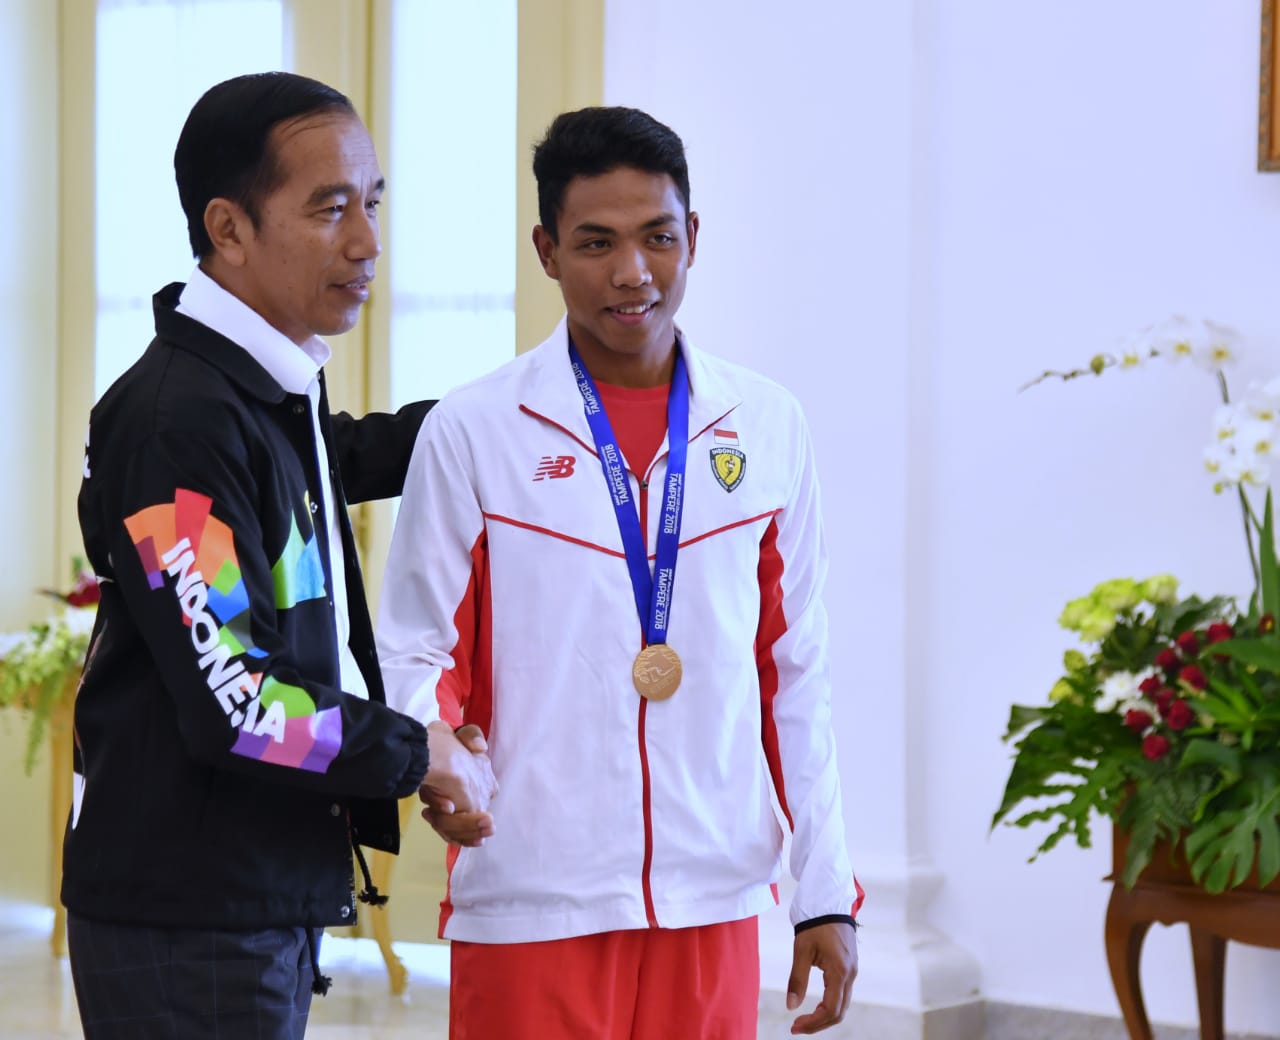 Presiden Jokowi saat menerima kunjungan juara dunia lari 100 meter U-20 di Istana Bogor, Rabu, 18 Juli 2018. (Foto: Divisi Pers Presiden)